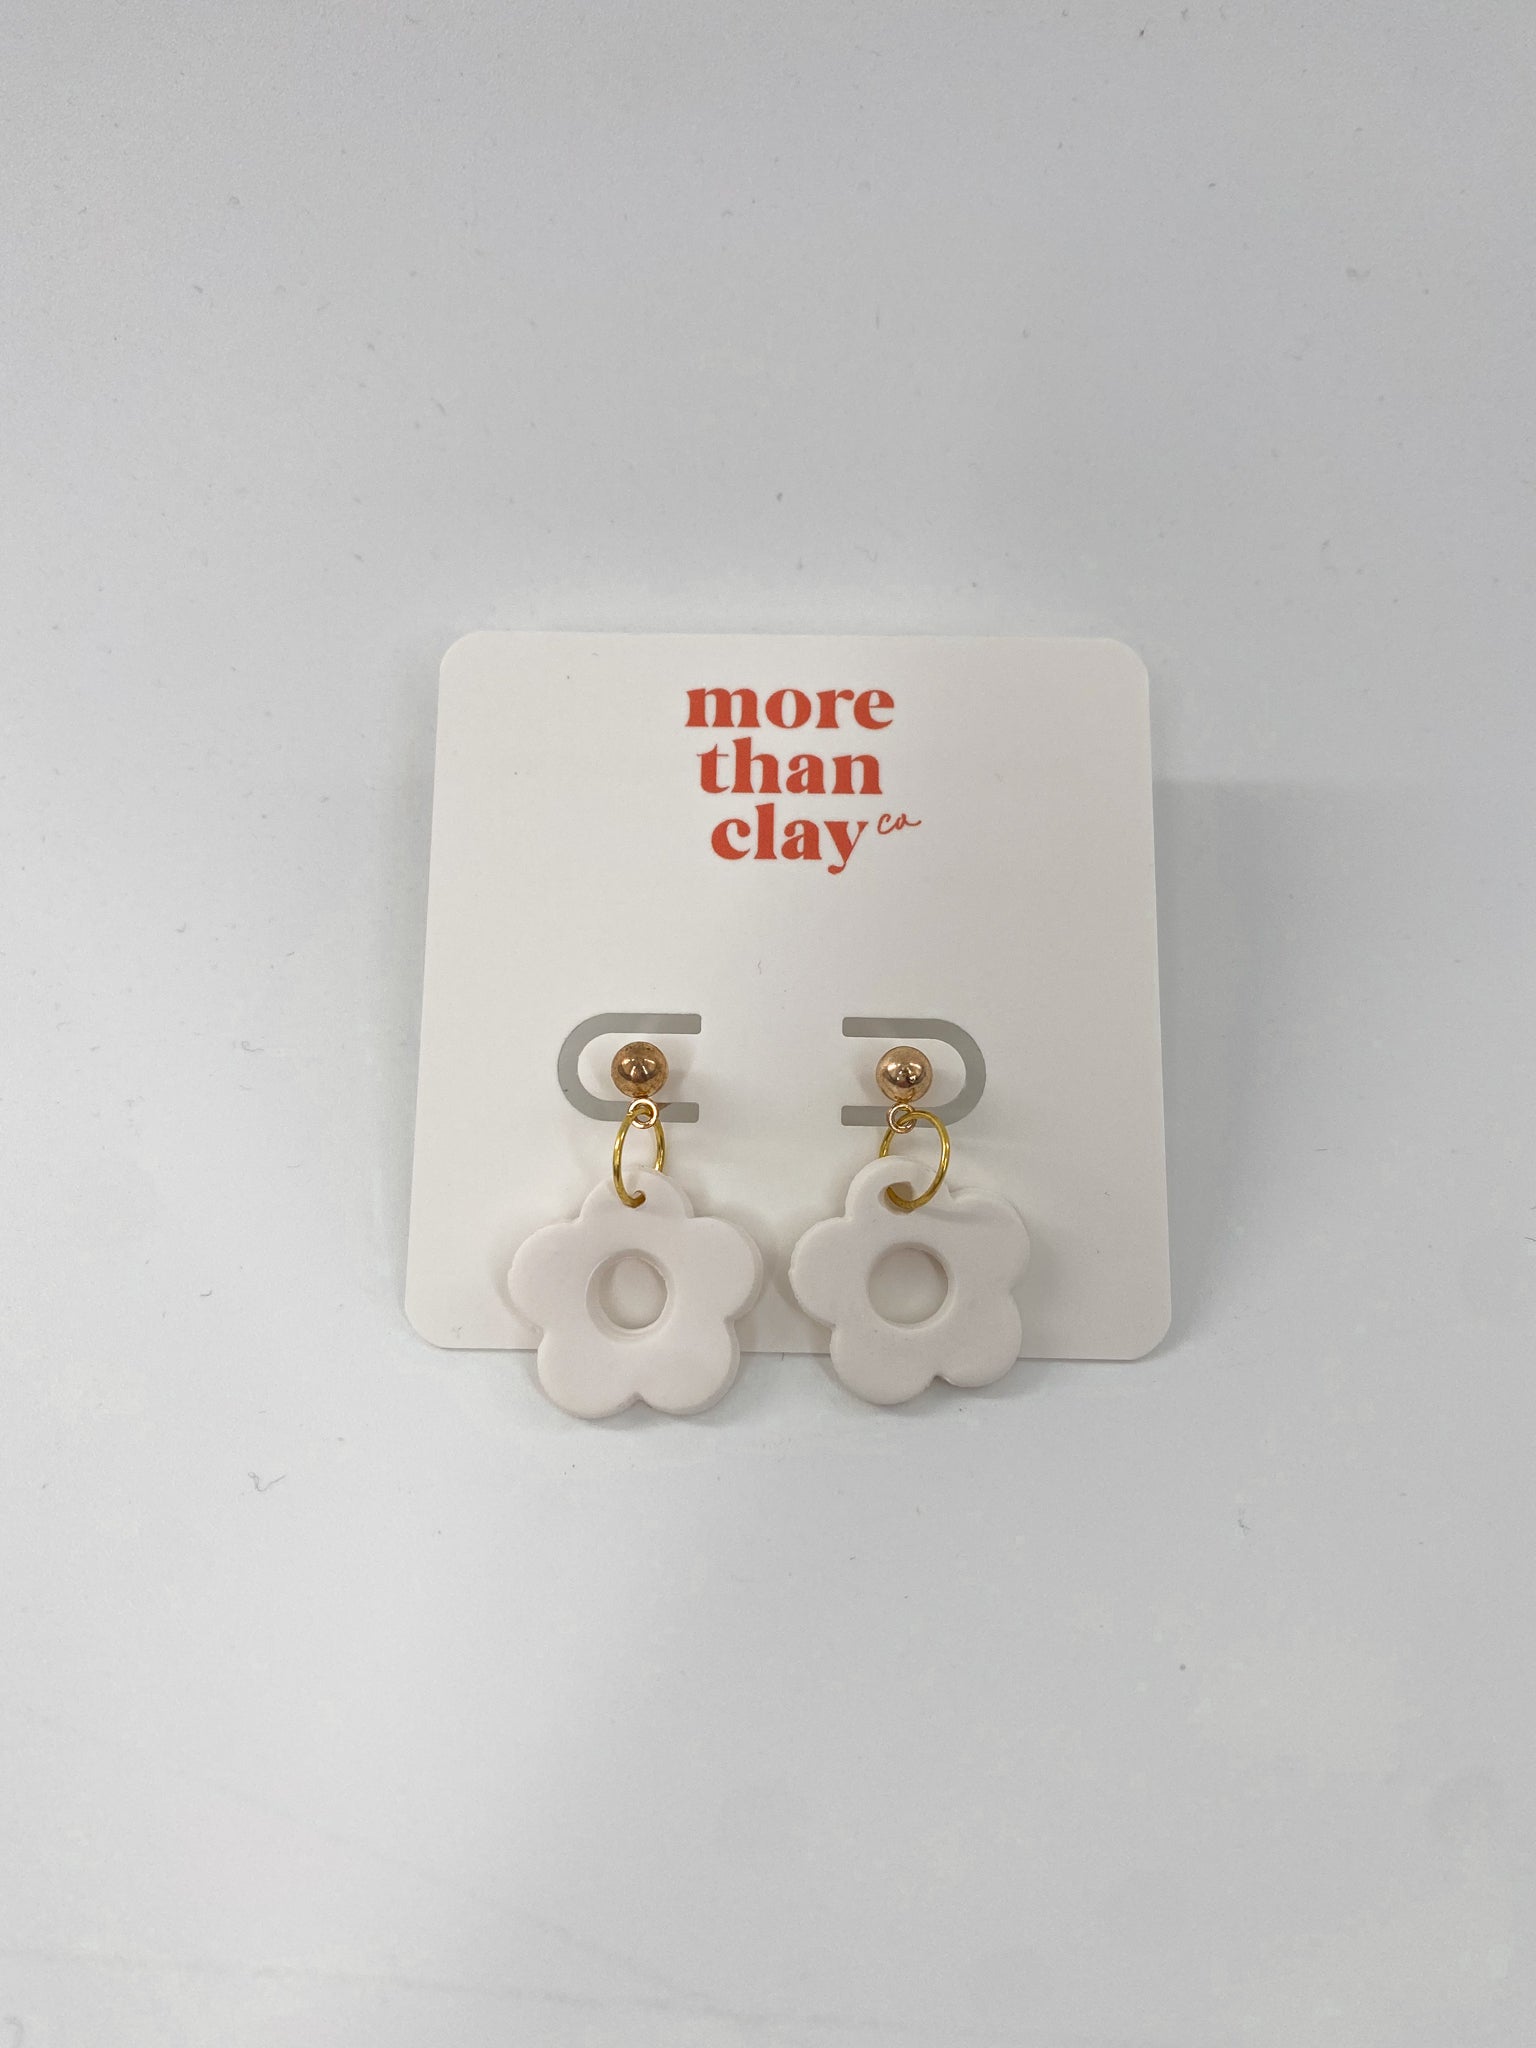 the mini daisy earrings